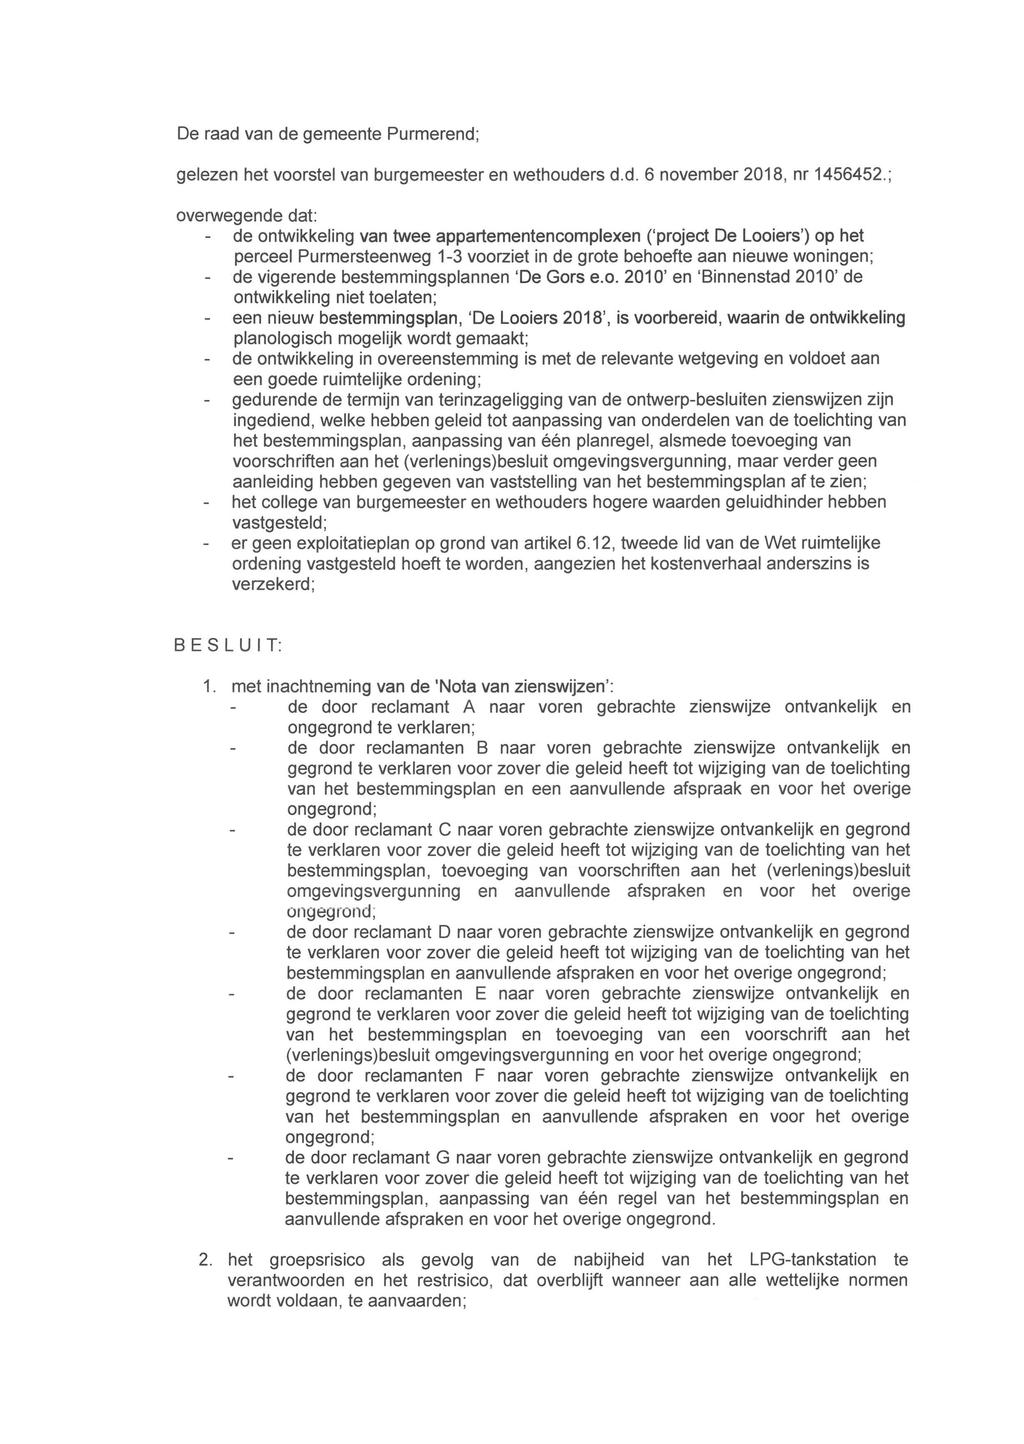 De raad van de gemeente Purmerend; gelezen het voorstel van burgemeester en wethouders d.d. 6 november 2018, nr 1456452.